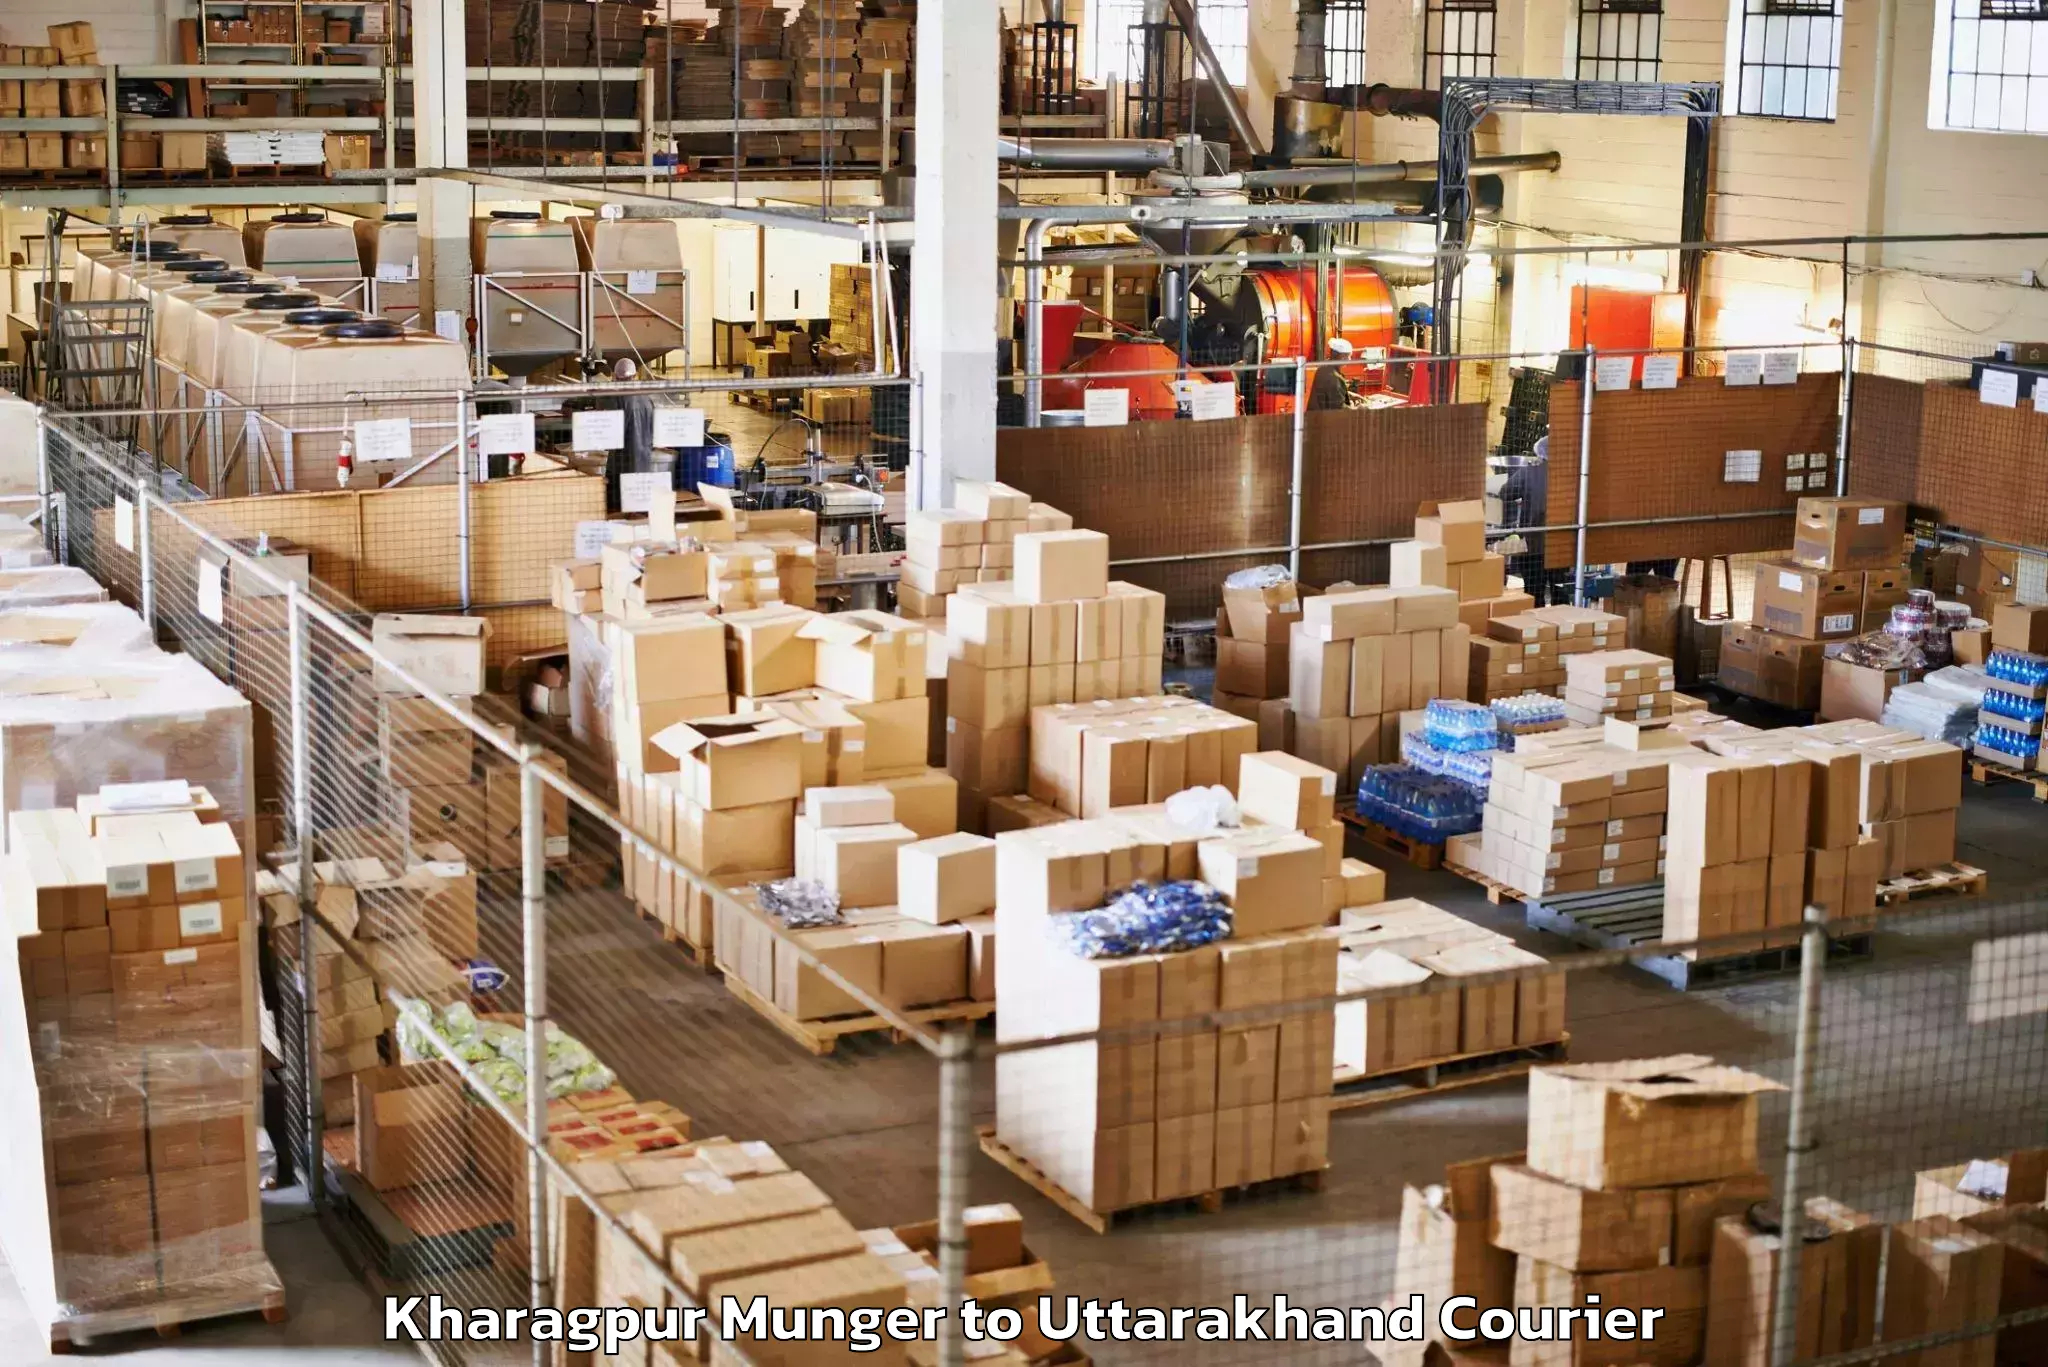 Luggage delivery network Kharagpur Munger to Uttarakhand